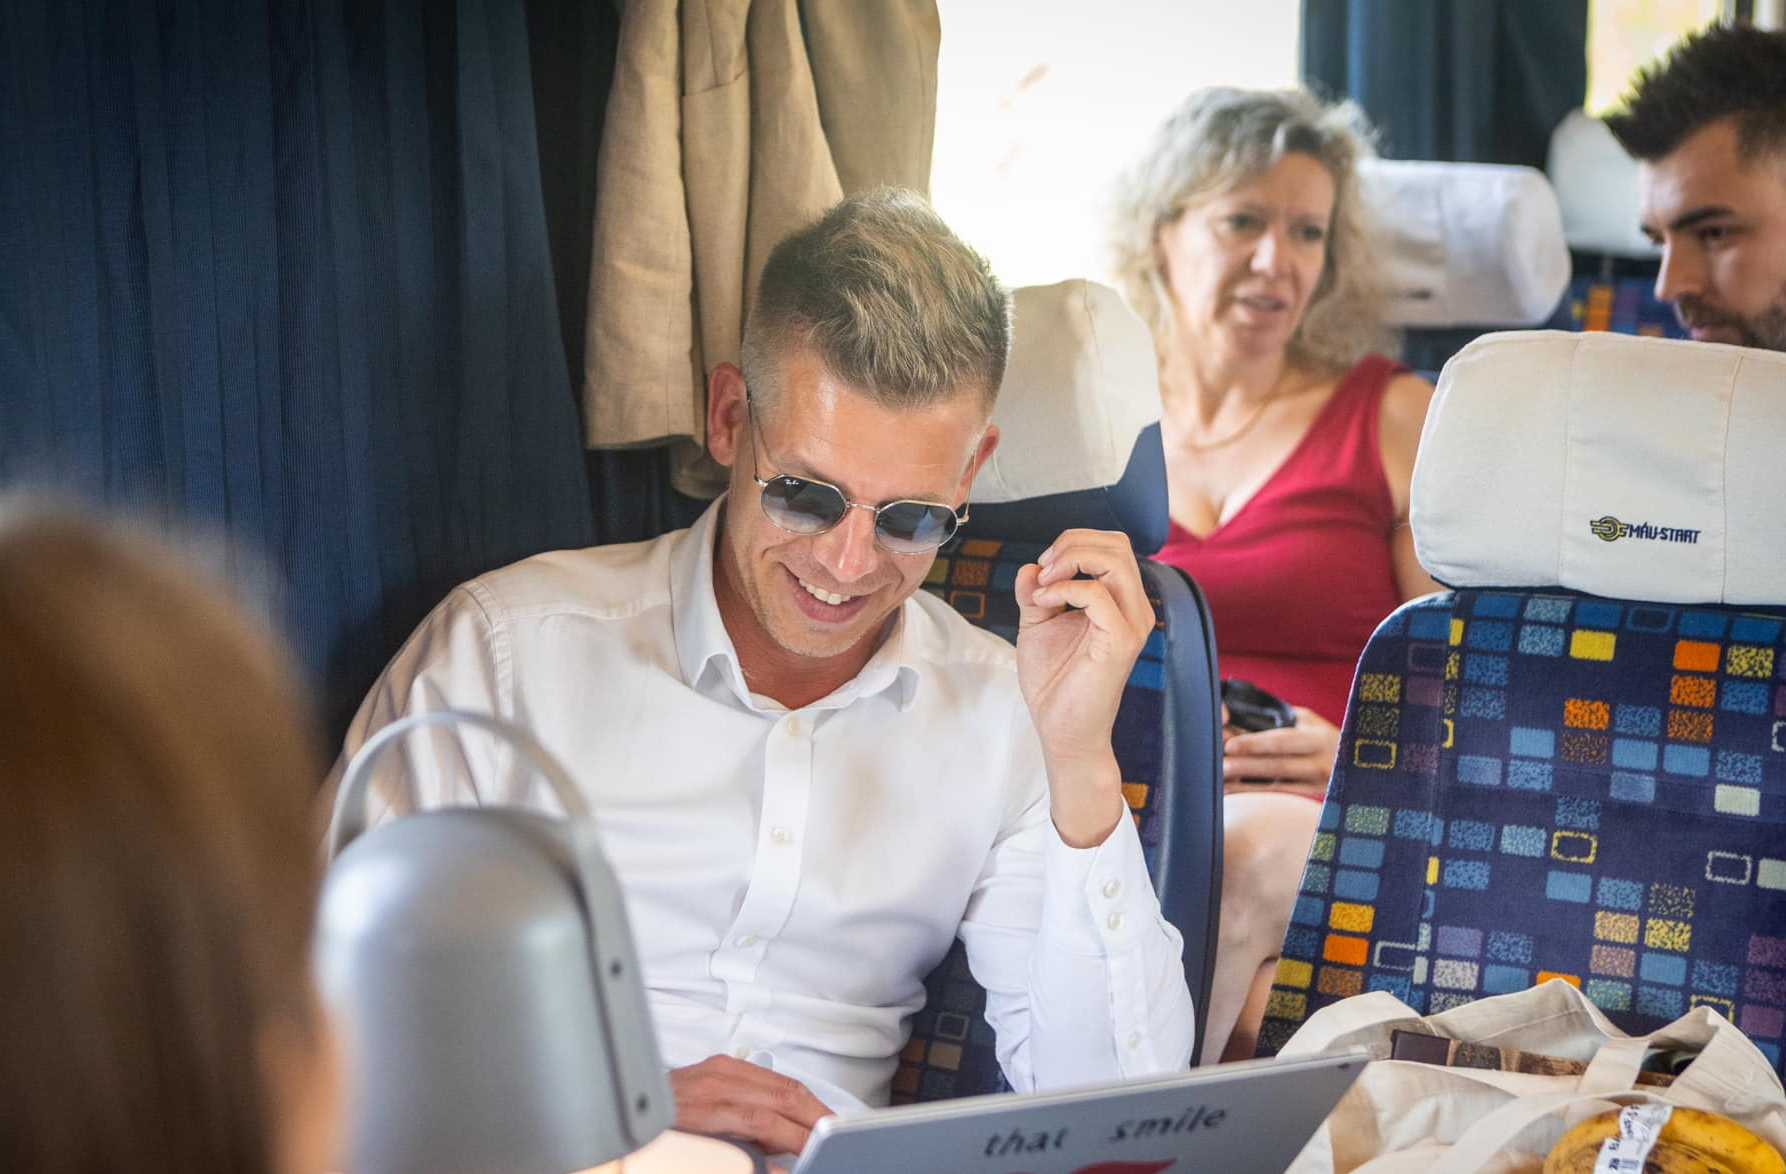 Magyar Péter képet posztolt a vasúti kocsiból, amiben Debrecenbe utazott: „62 TEK-es sem vigyáz rám évi 1 milliárd forintért”